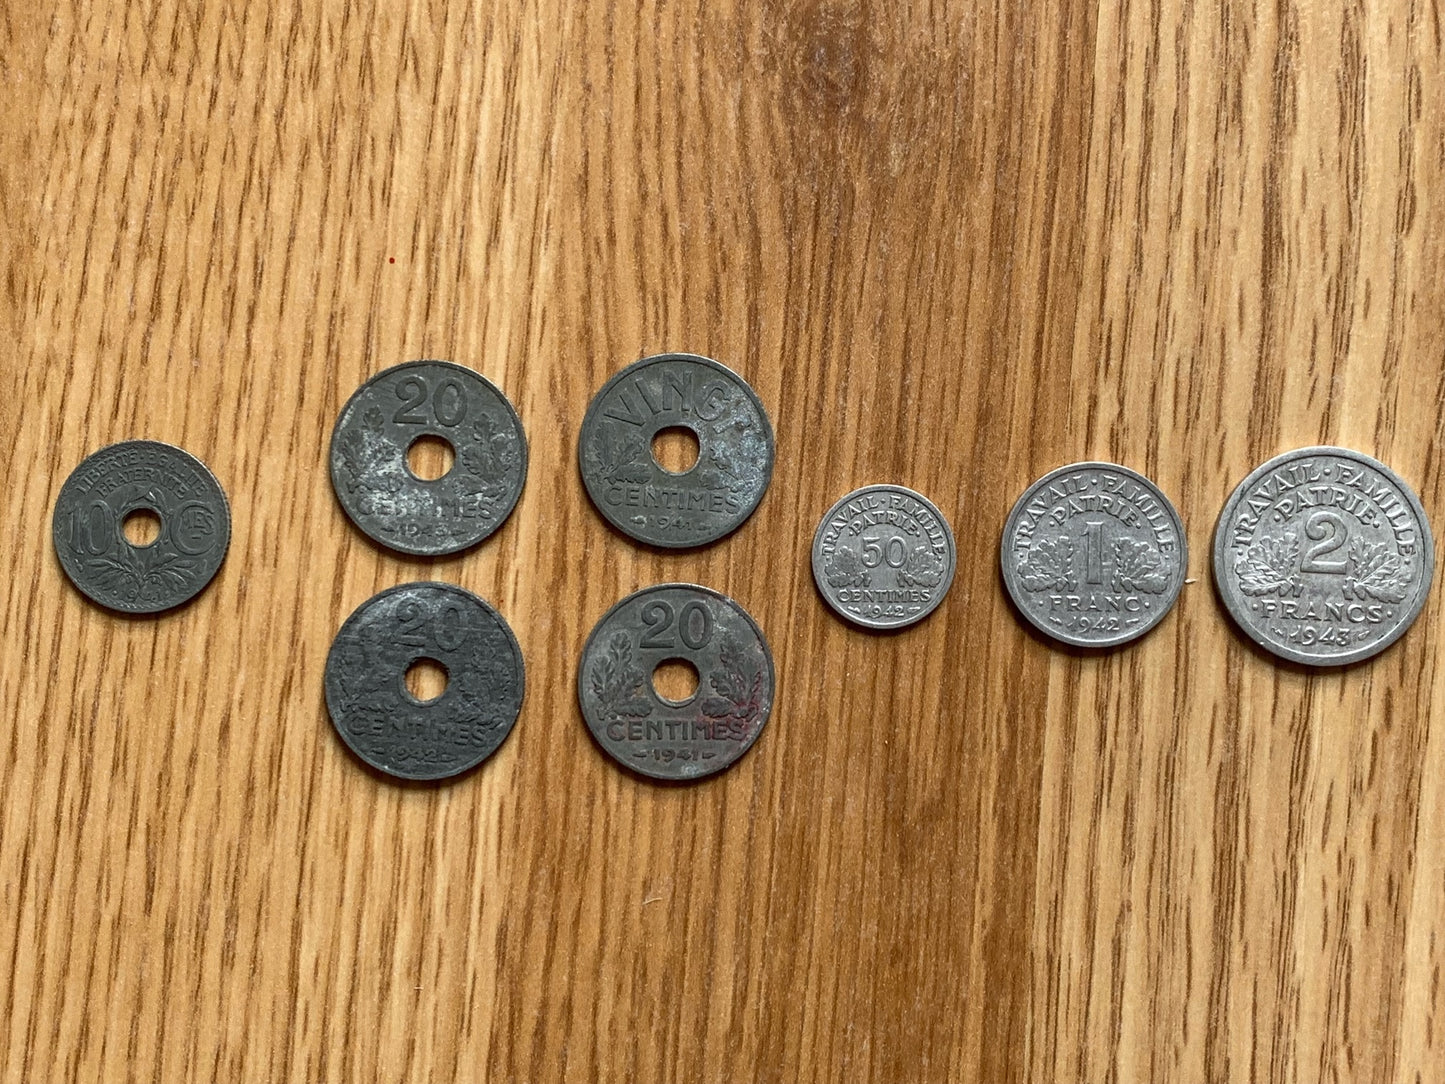 8 WW2 Vichy coins